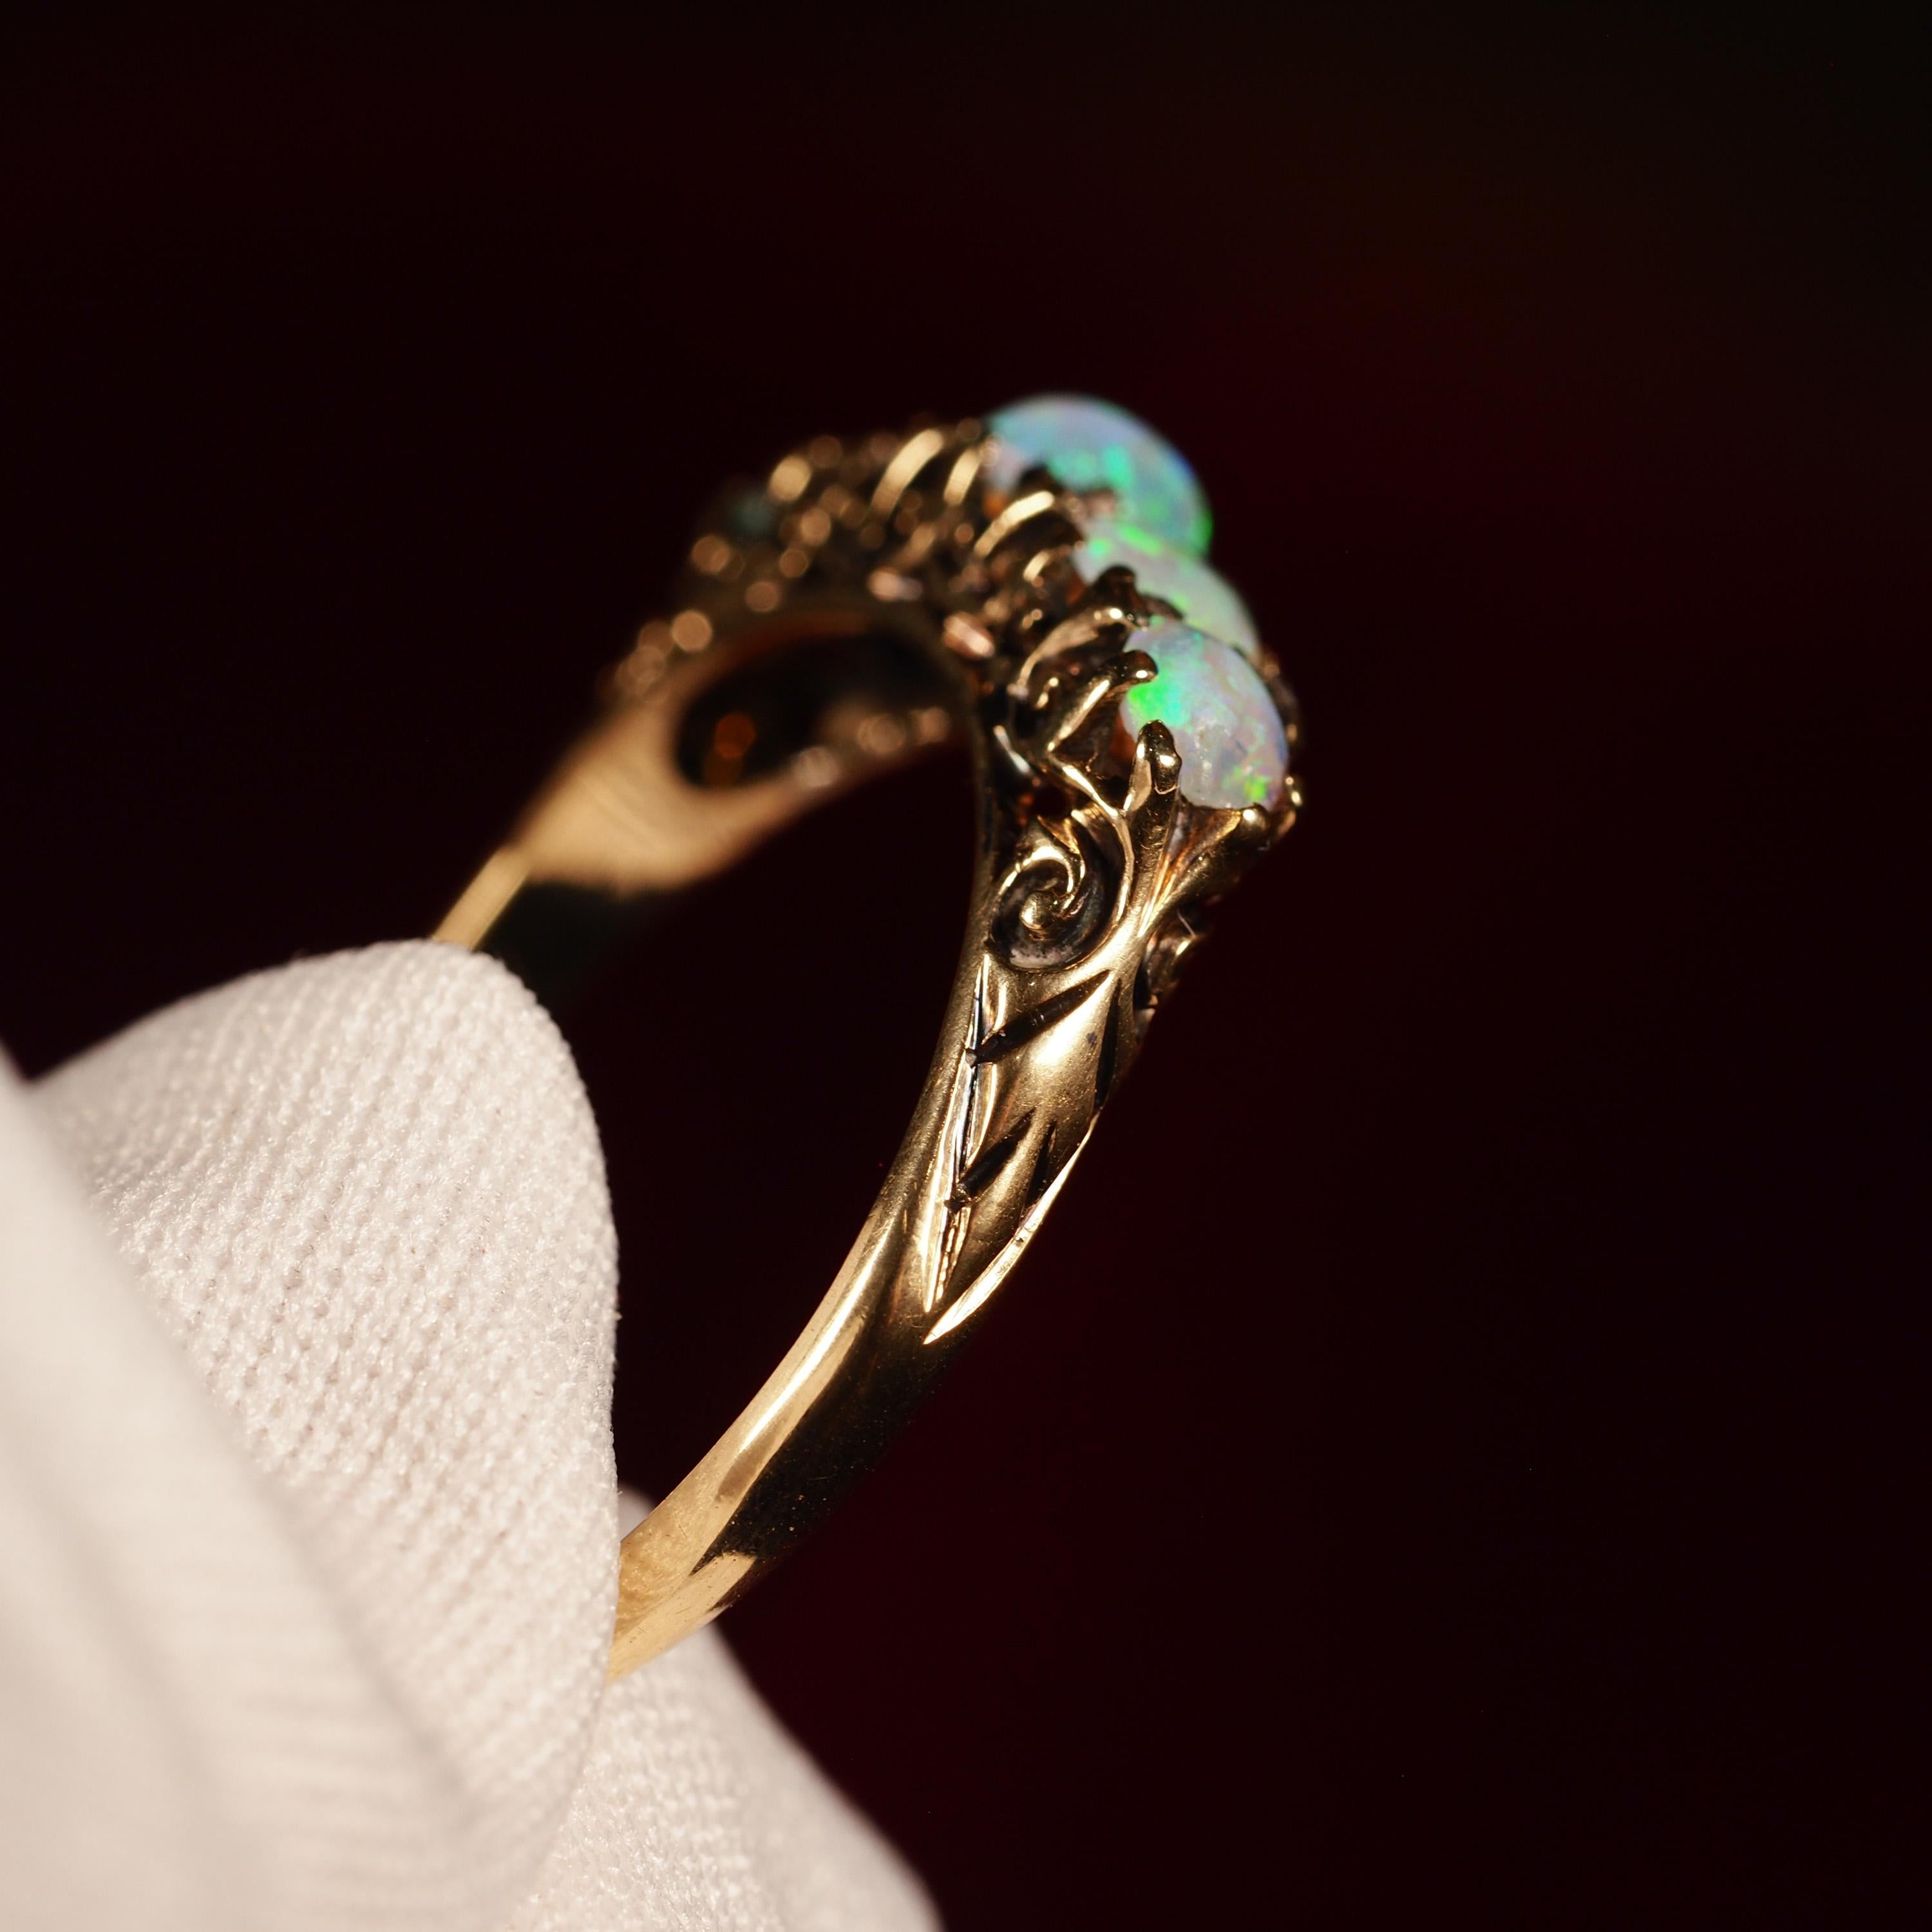 Antique Opal 14K Gold Ring with 5 Cabochons & Fleur-de-lis - Victorian c.1890 12